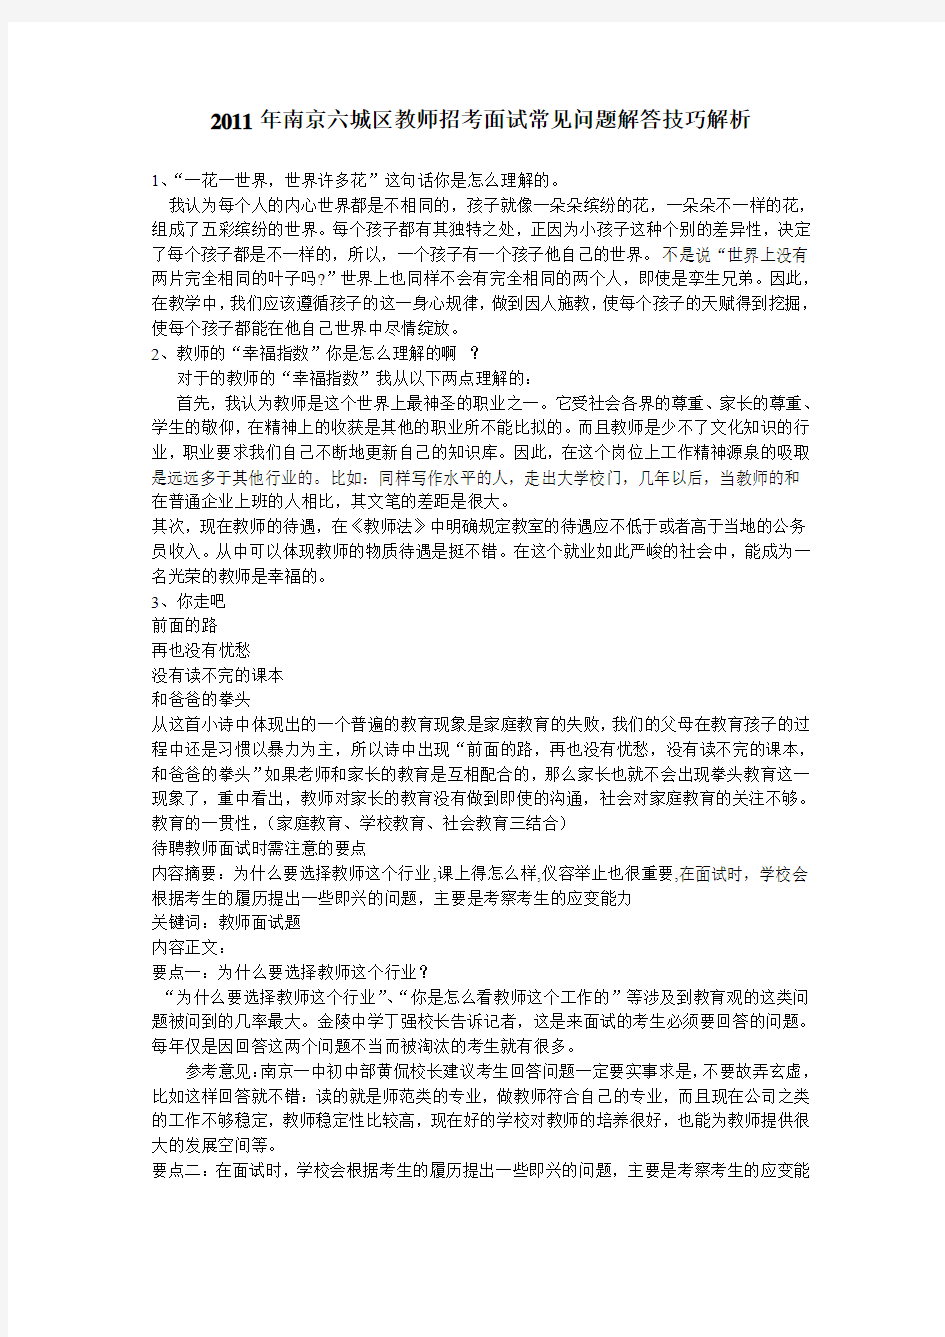 2011年南京六城区教师招考面试常见问题解答技巧解析